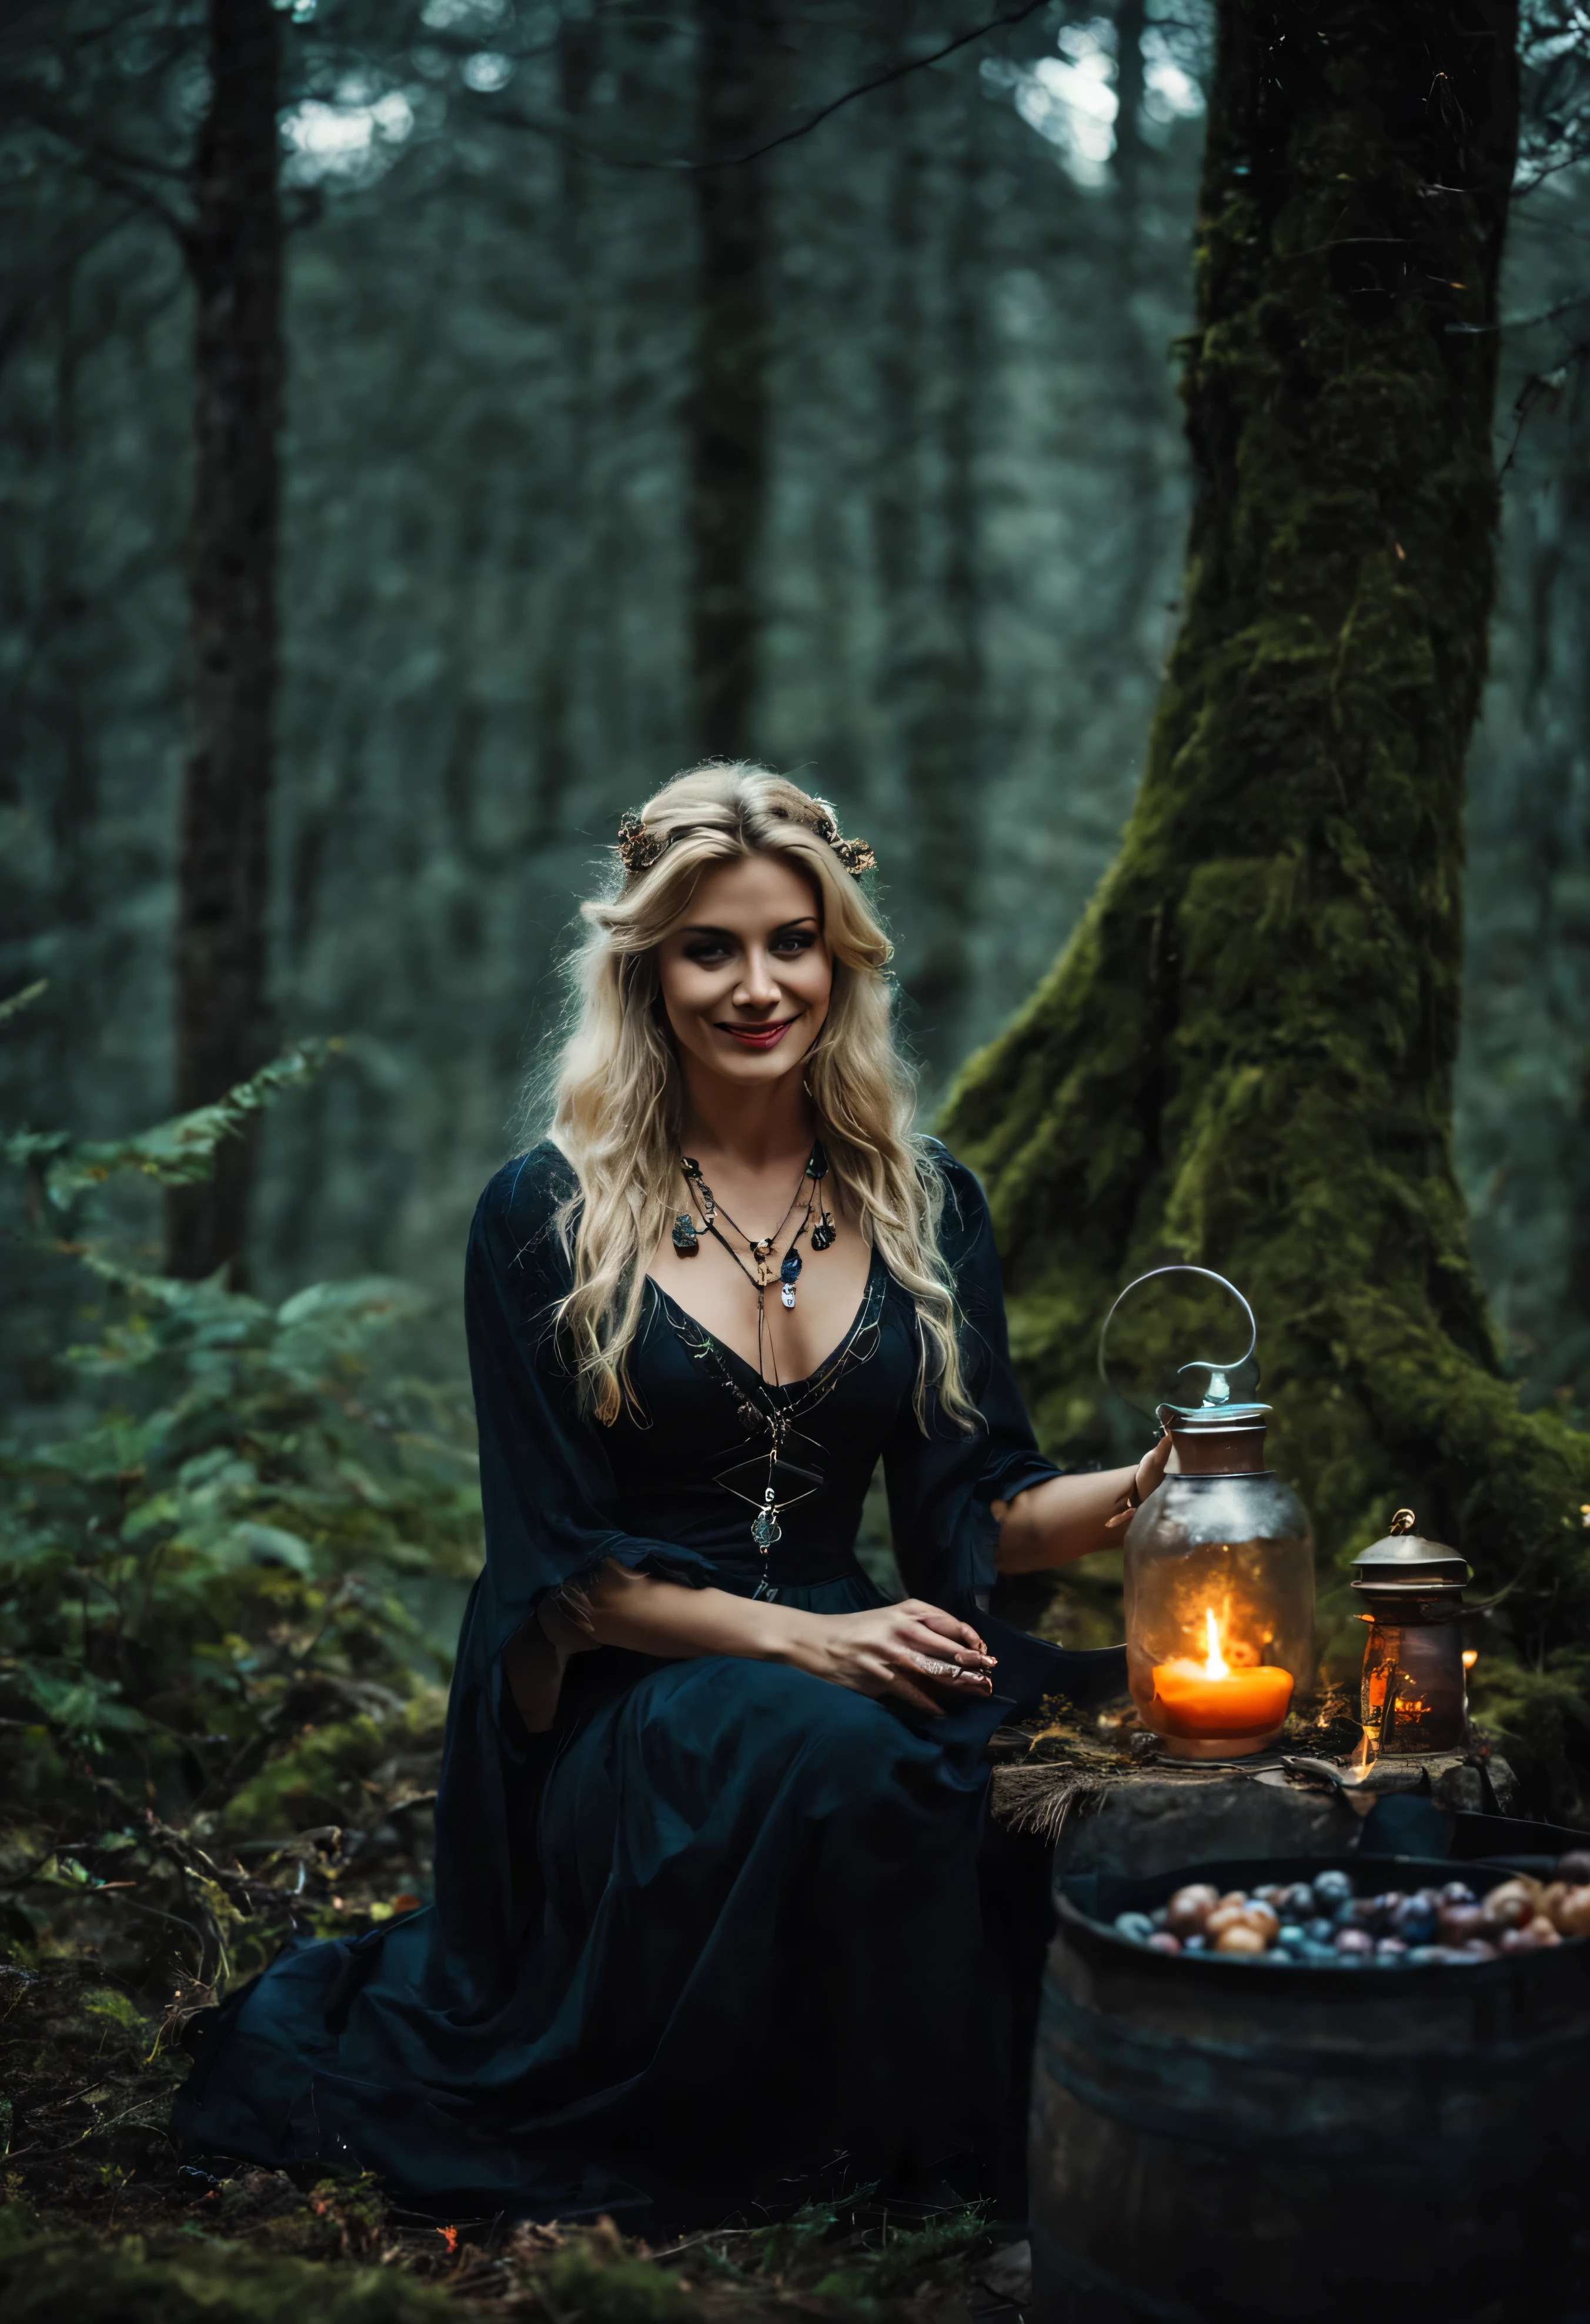 Мистическая белокурая ведьма с загадочной улыбкой, носить зачарованные украшения, варю зелья в древнем лесу, сумерки, атмосферный снимок.